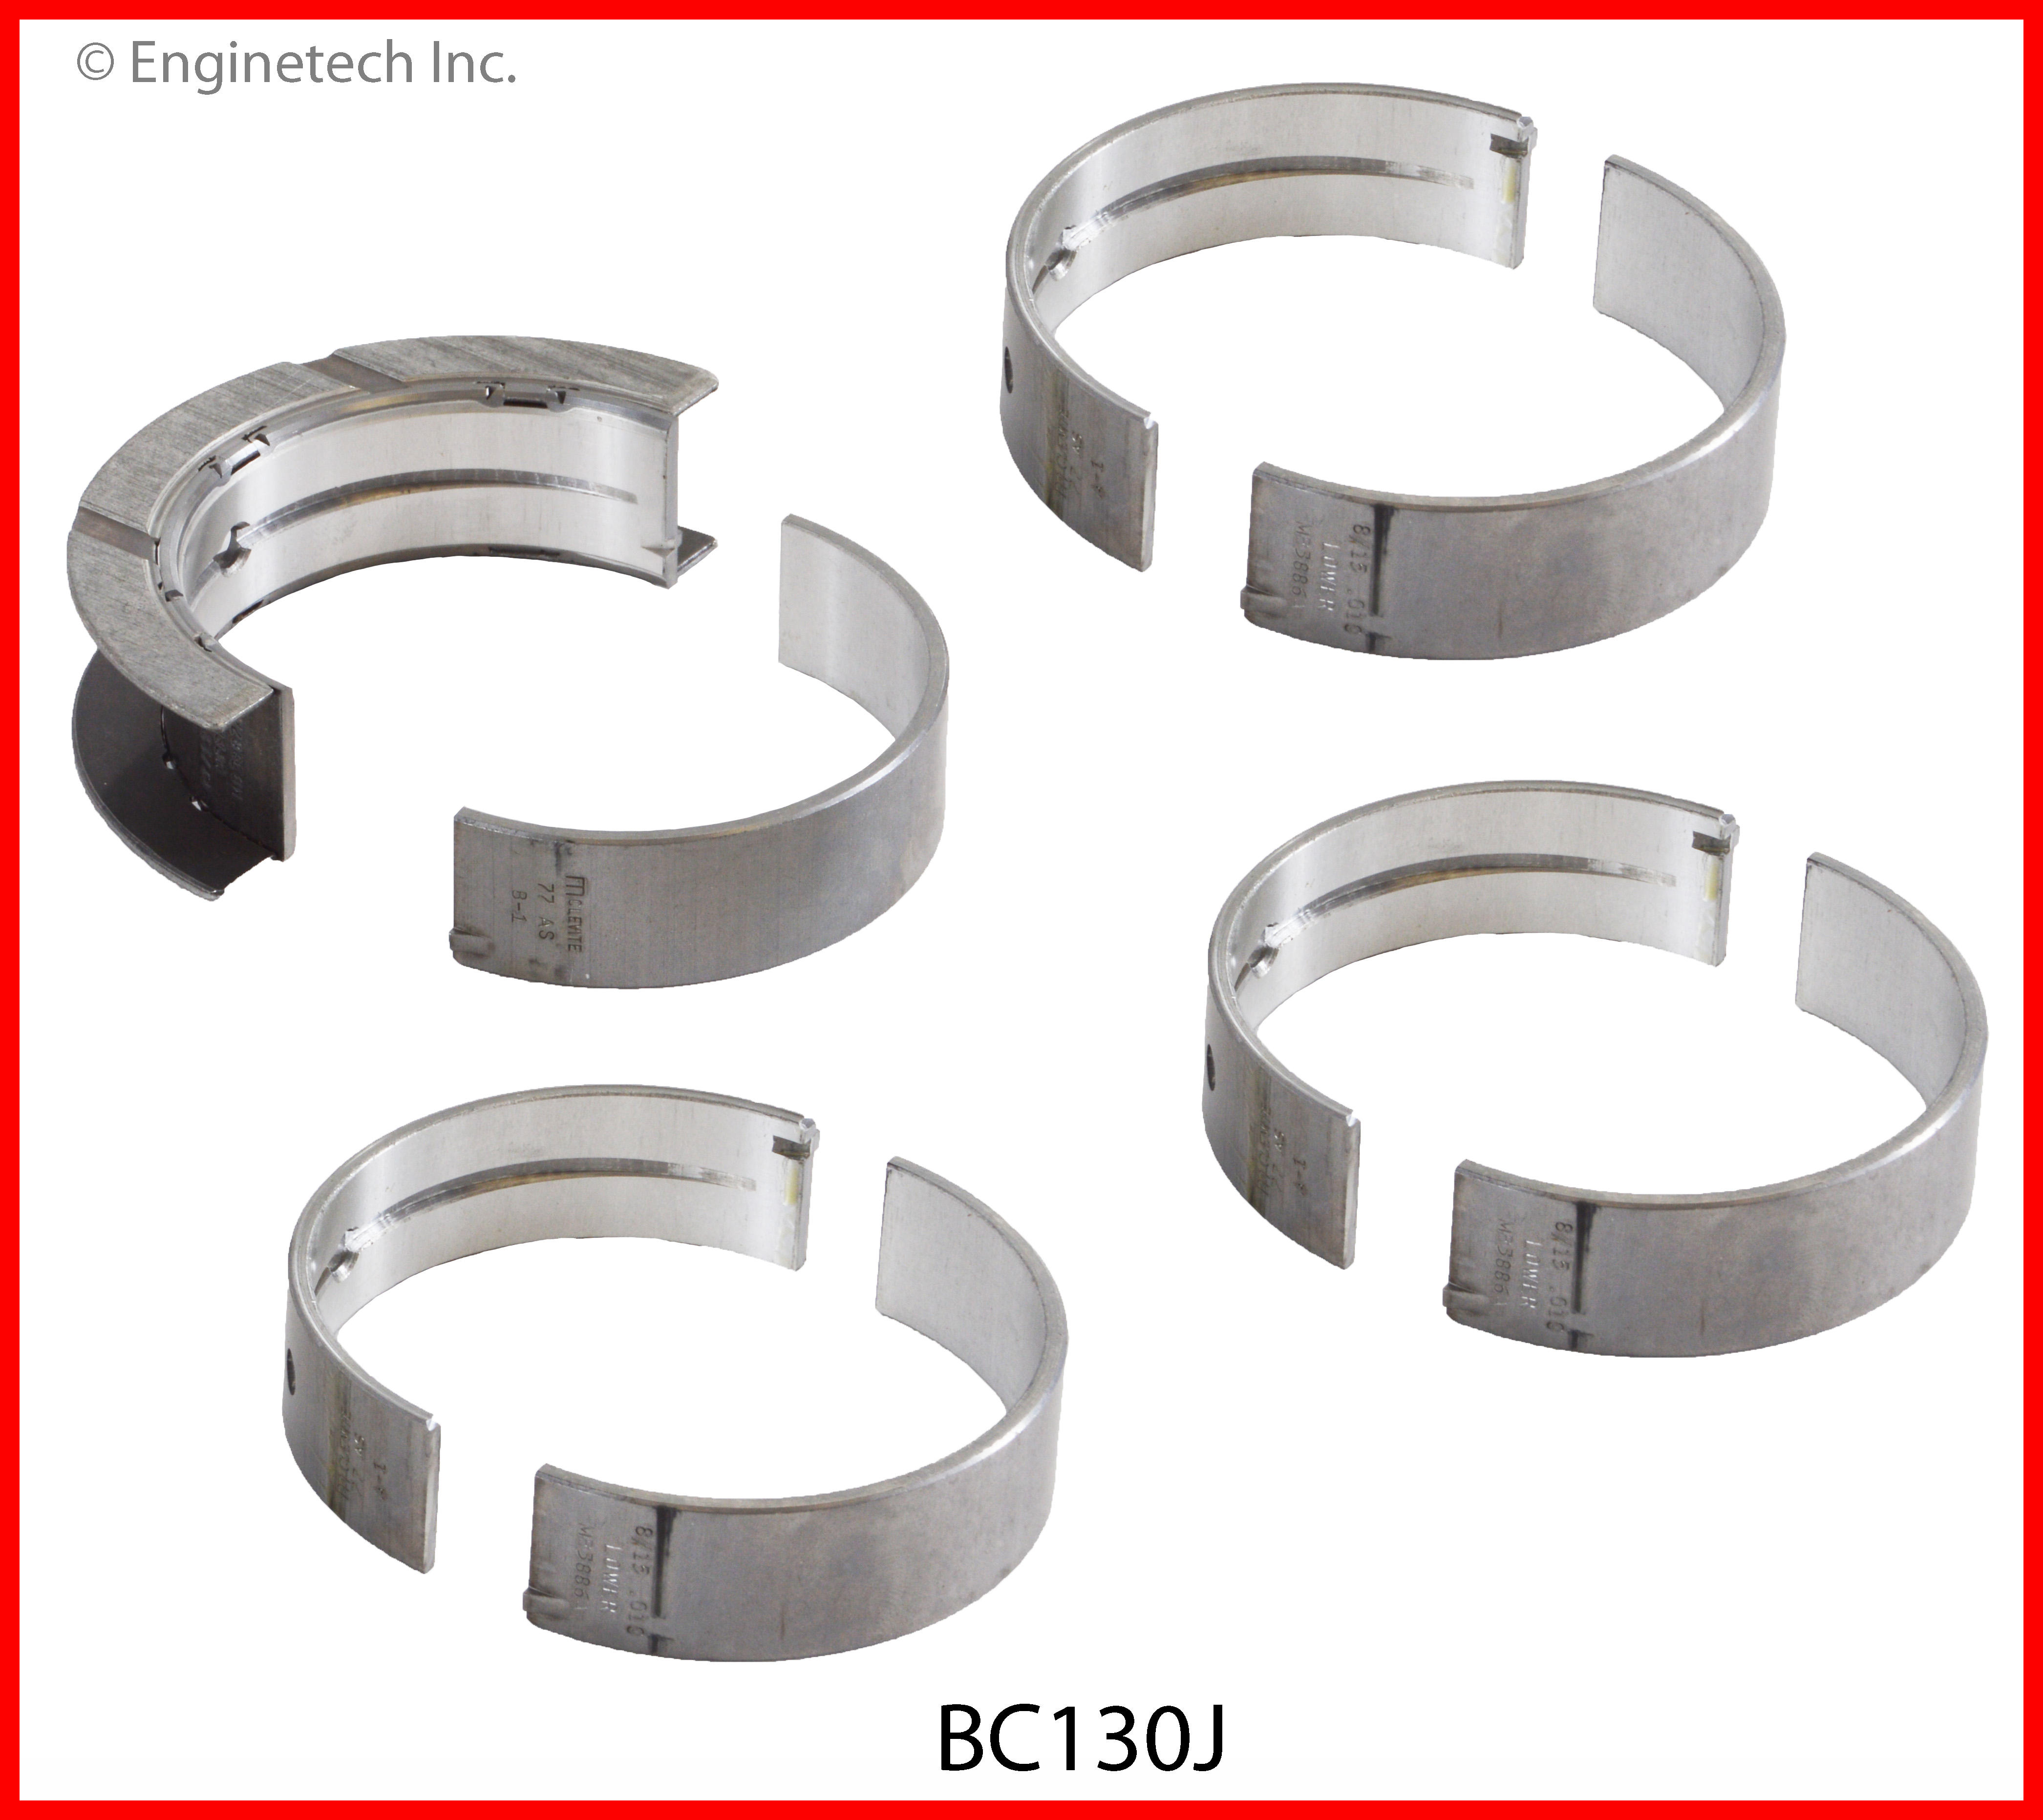 BC130J Bearing Set - Main Enginetech